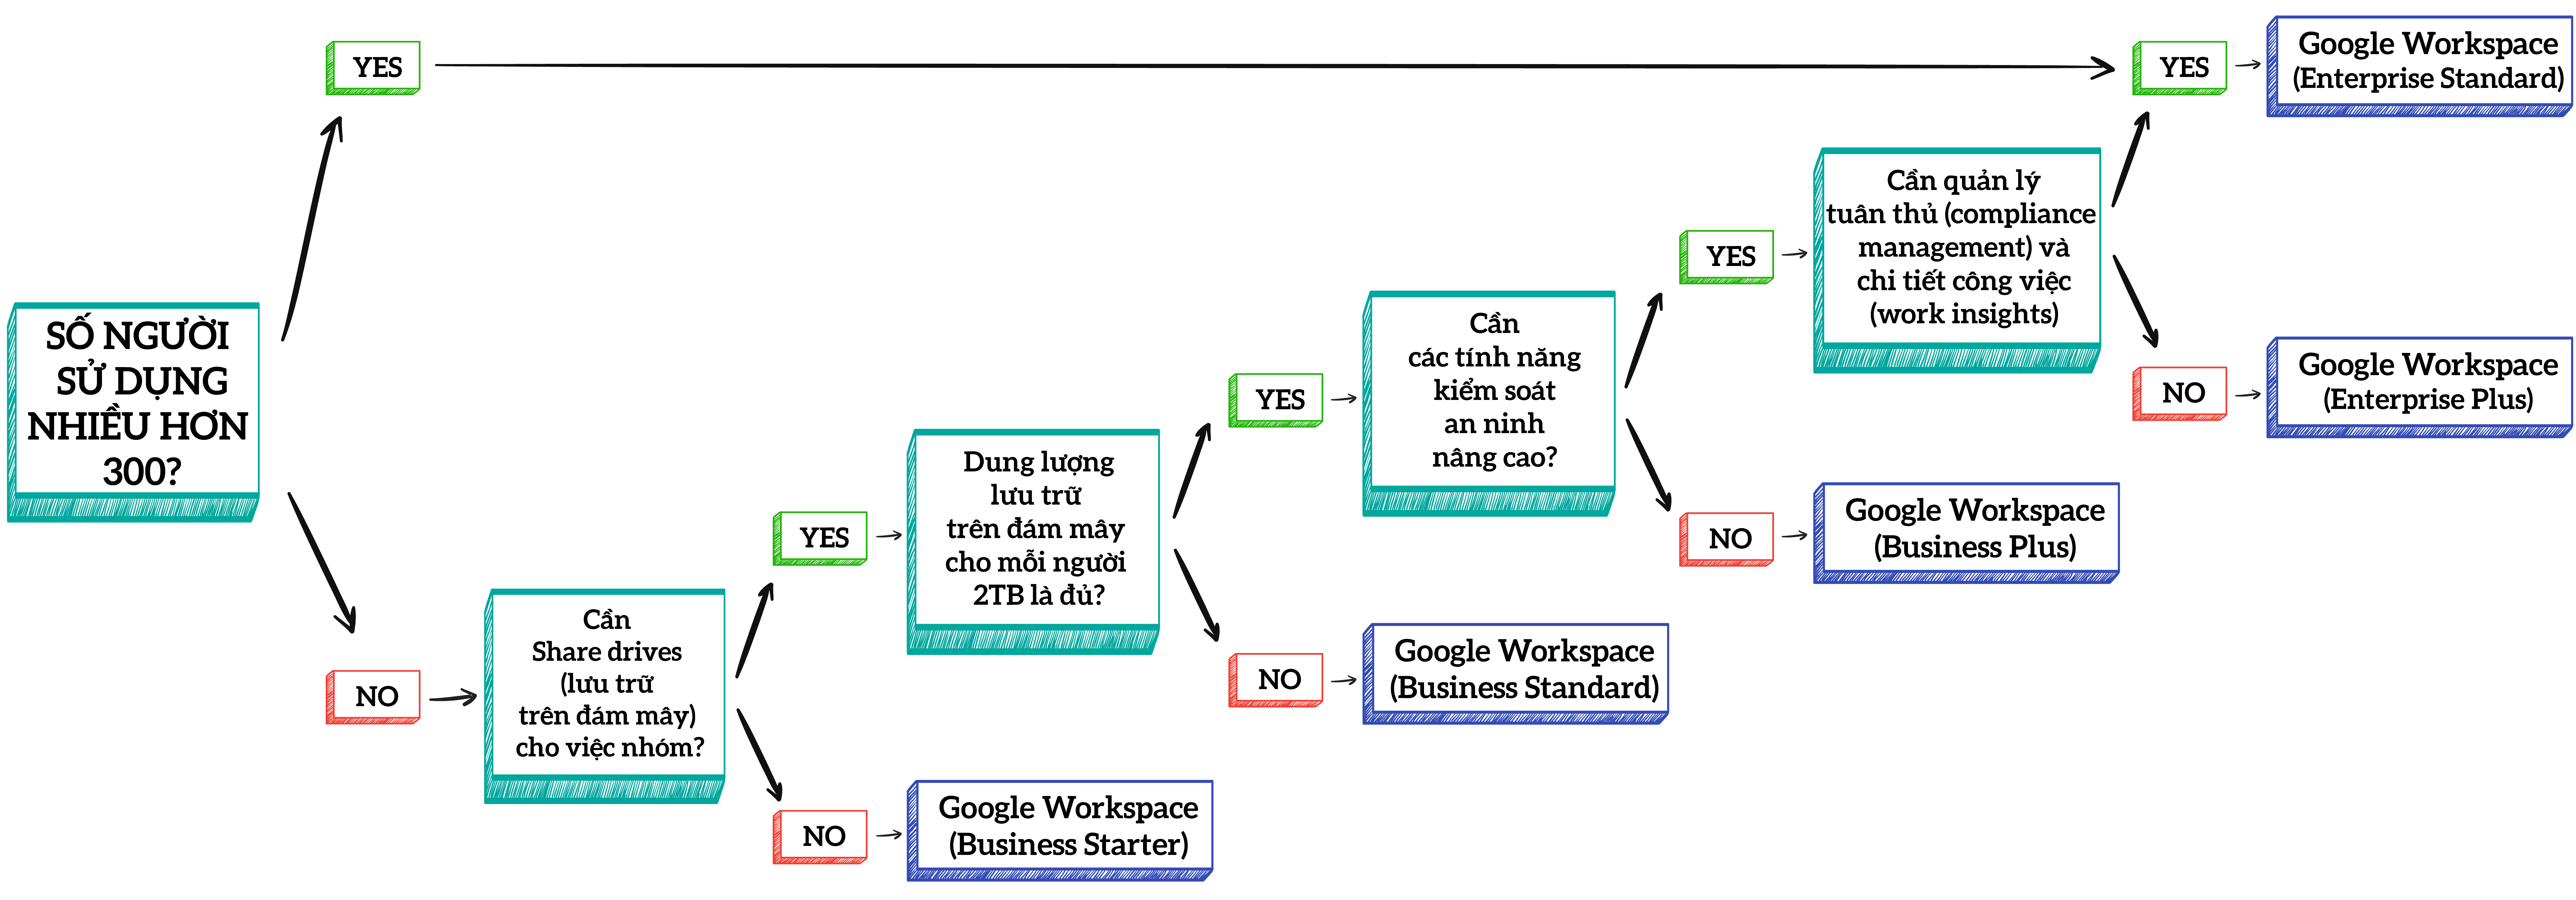 Hướng dẫn chọn gói Google Workspace phù hợp